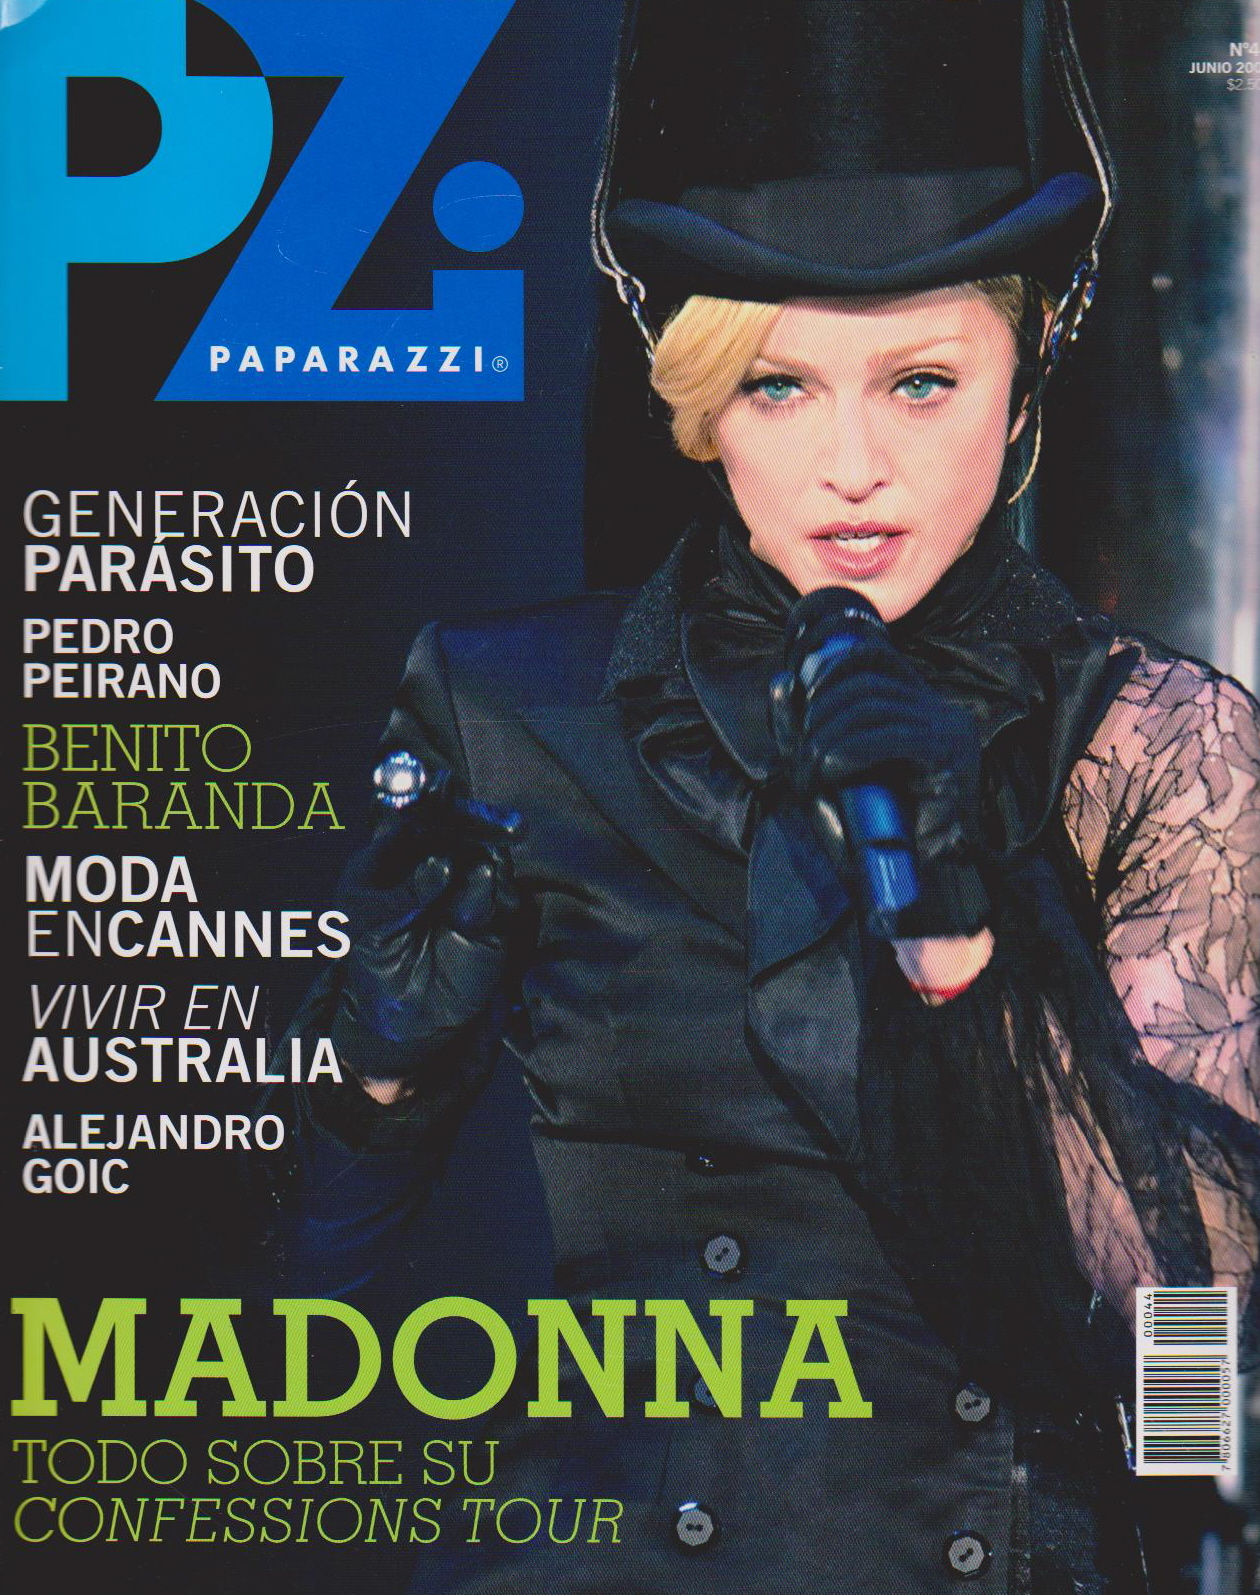 Madonna 2006. Madonna Confessions Tour. Paparazzi 2006. Папарацци журнал